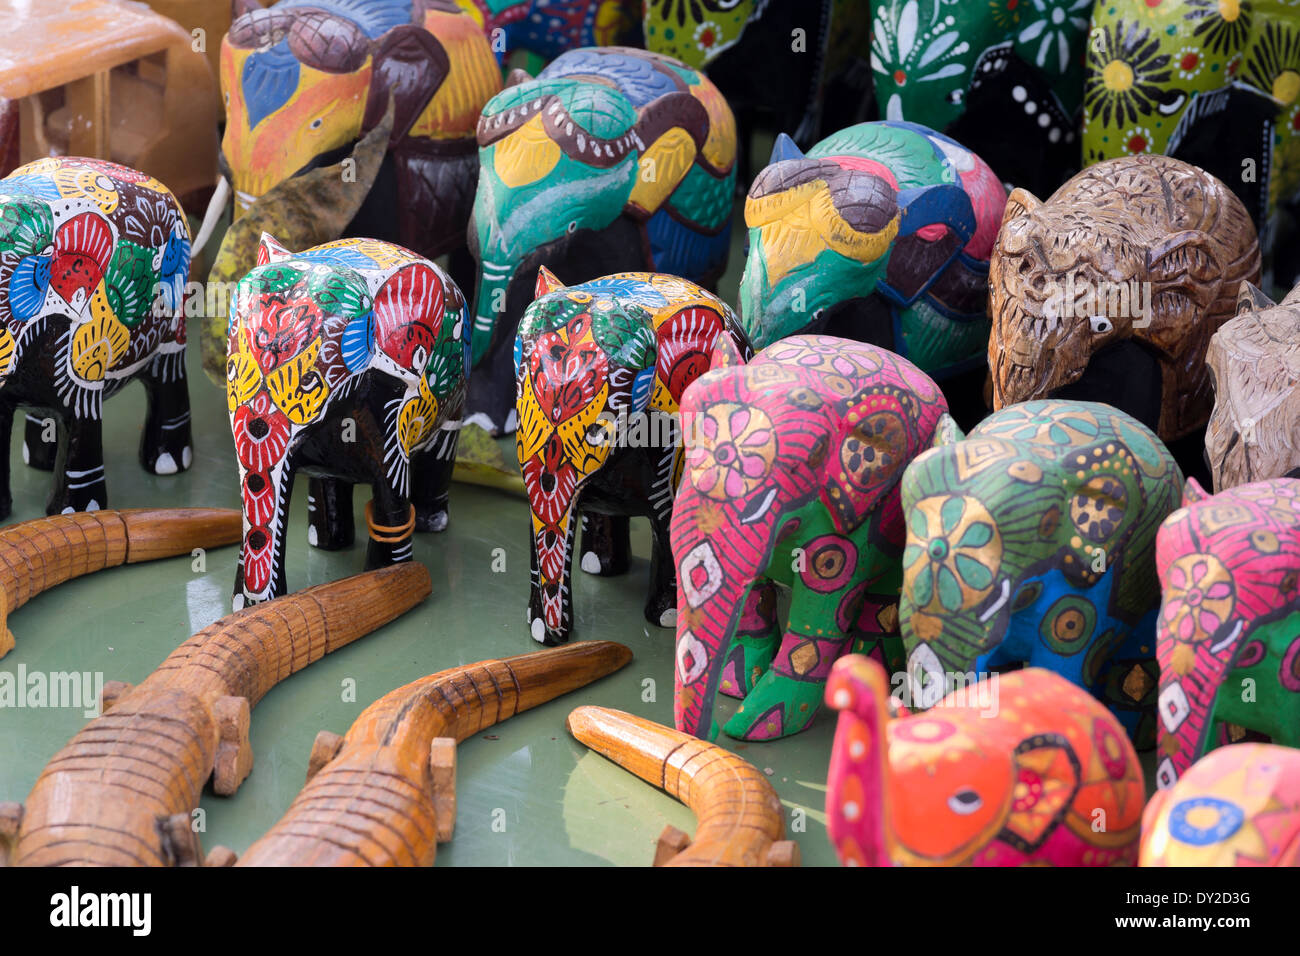 Kandy, Sri Lanka. Bois sculpté peint les éléphants à vendre at a market stall Banque D'Images